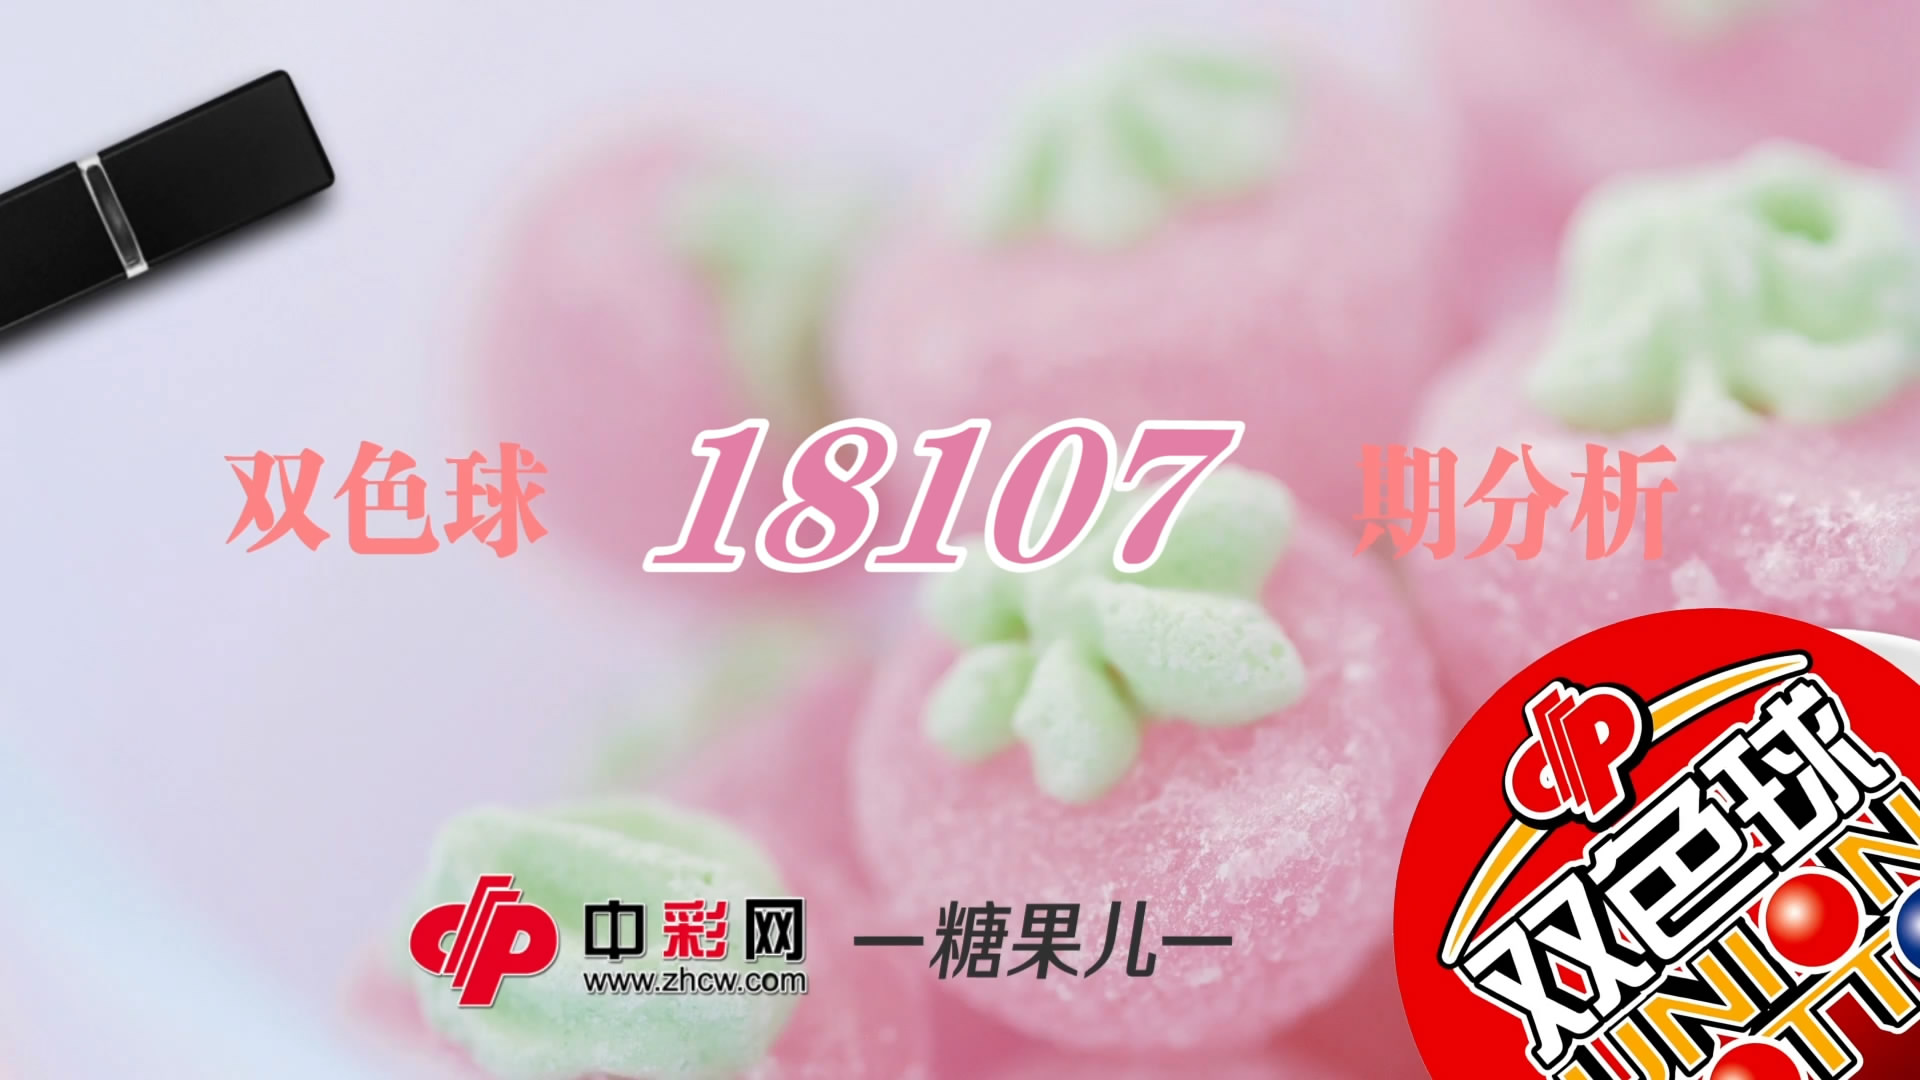 【中彩视频】糖果儿双色球第18107期